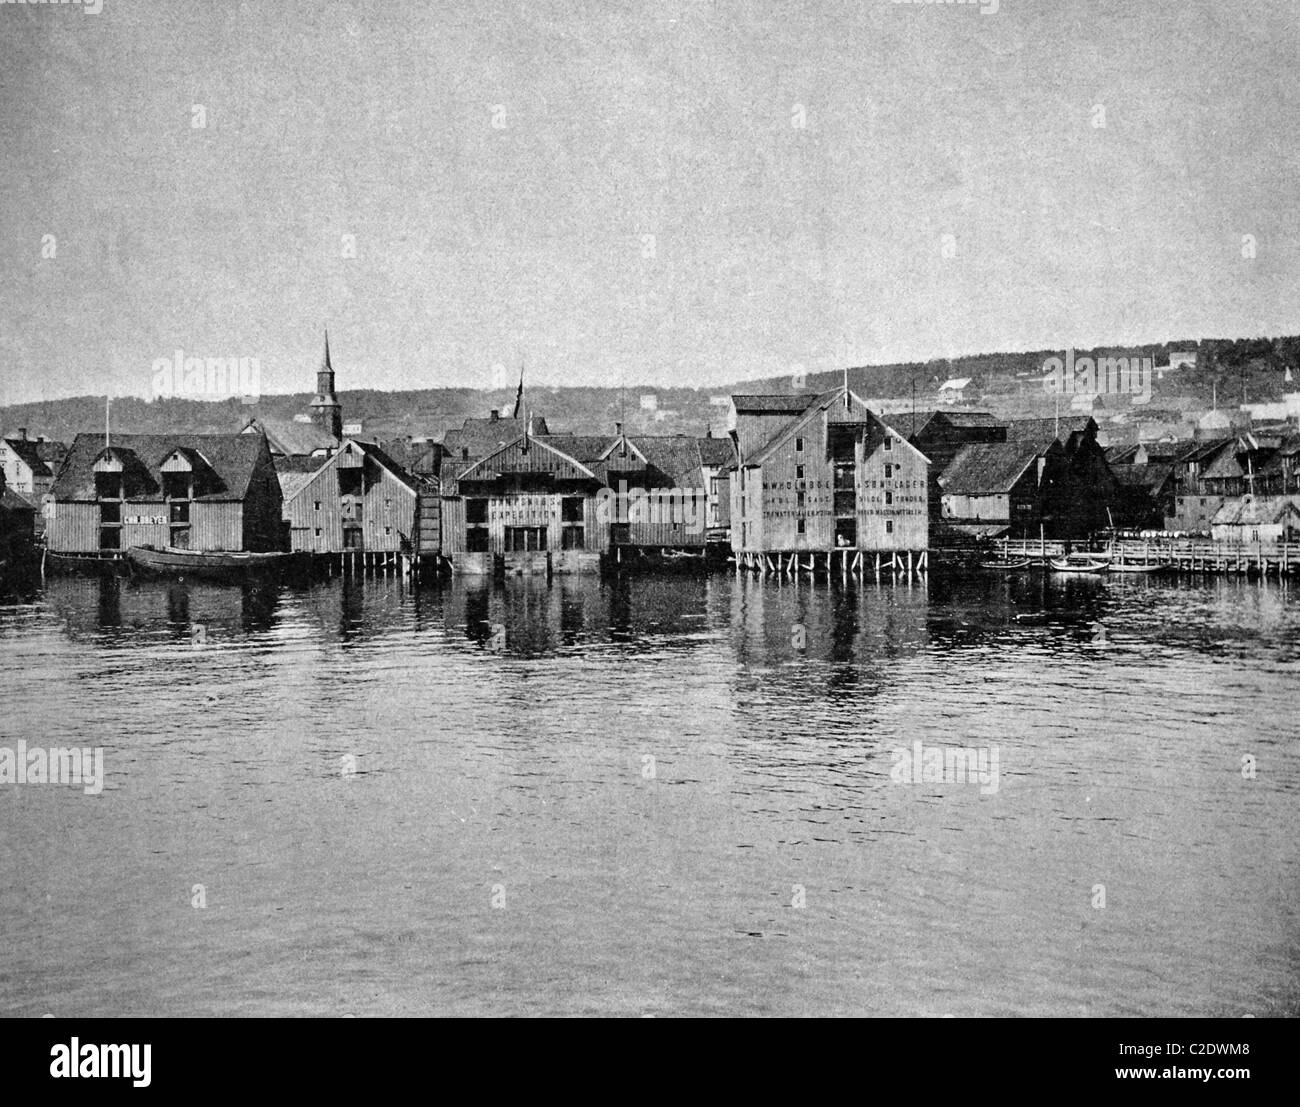 L'un des premiers tirages d'Autotype, vue de Tromsoe, photographie historique, 1884, Norvège, Europe Banque D'Images